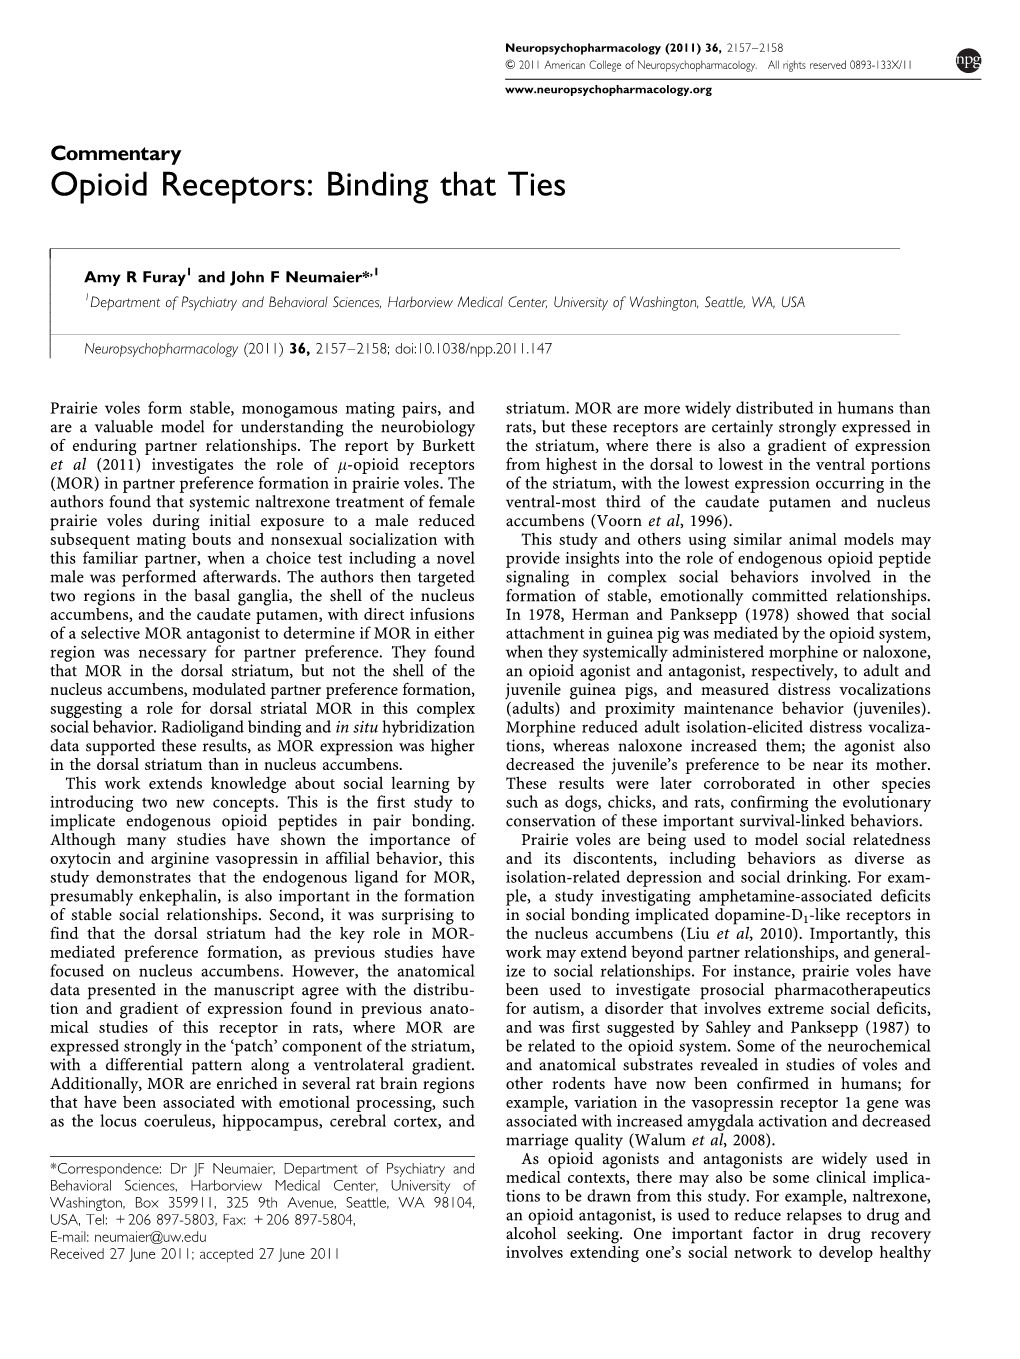 Opioid Receptors: Binding That Ties